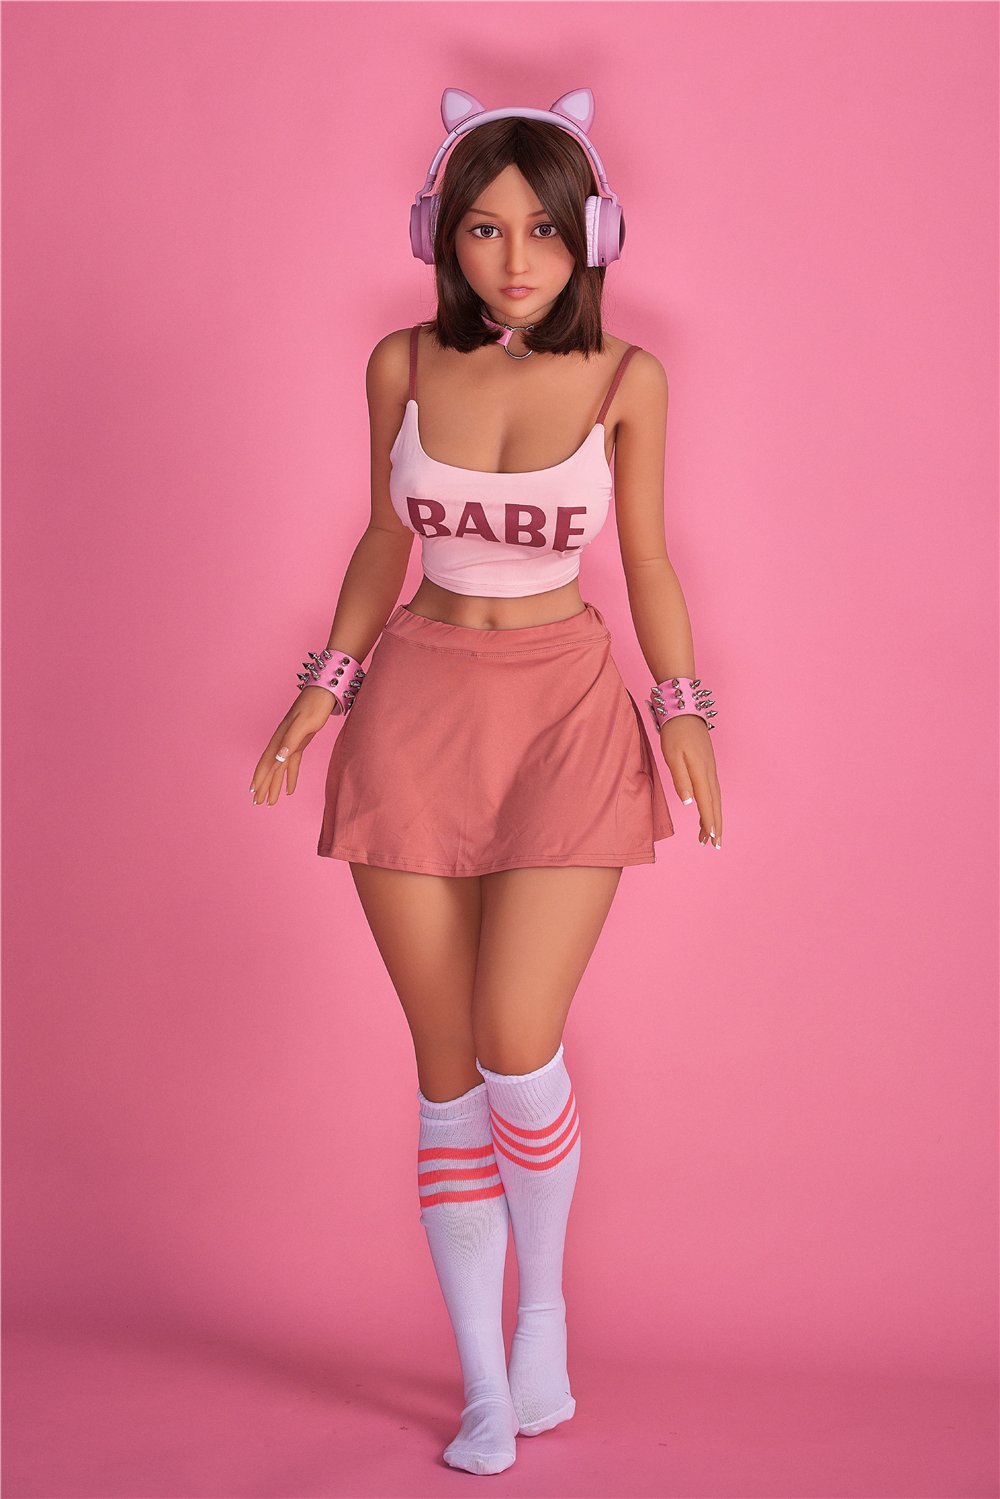 Irontechdoll Real Teen Sex Doll Miyin 153cm